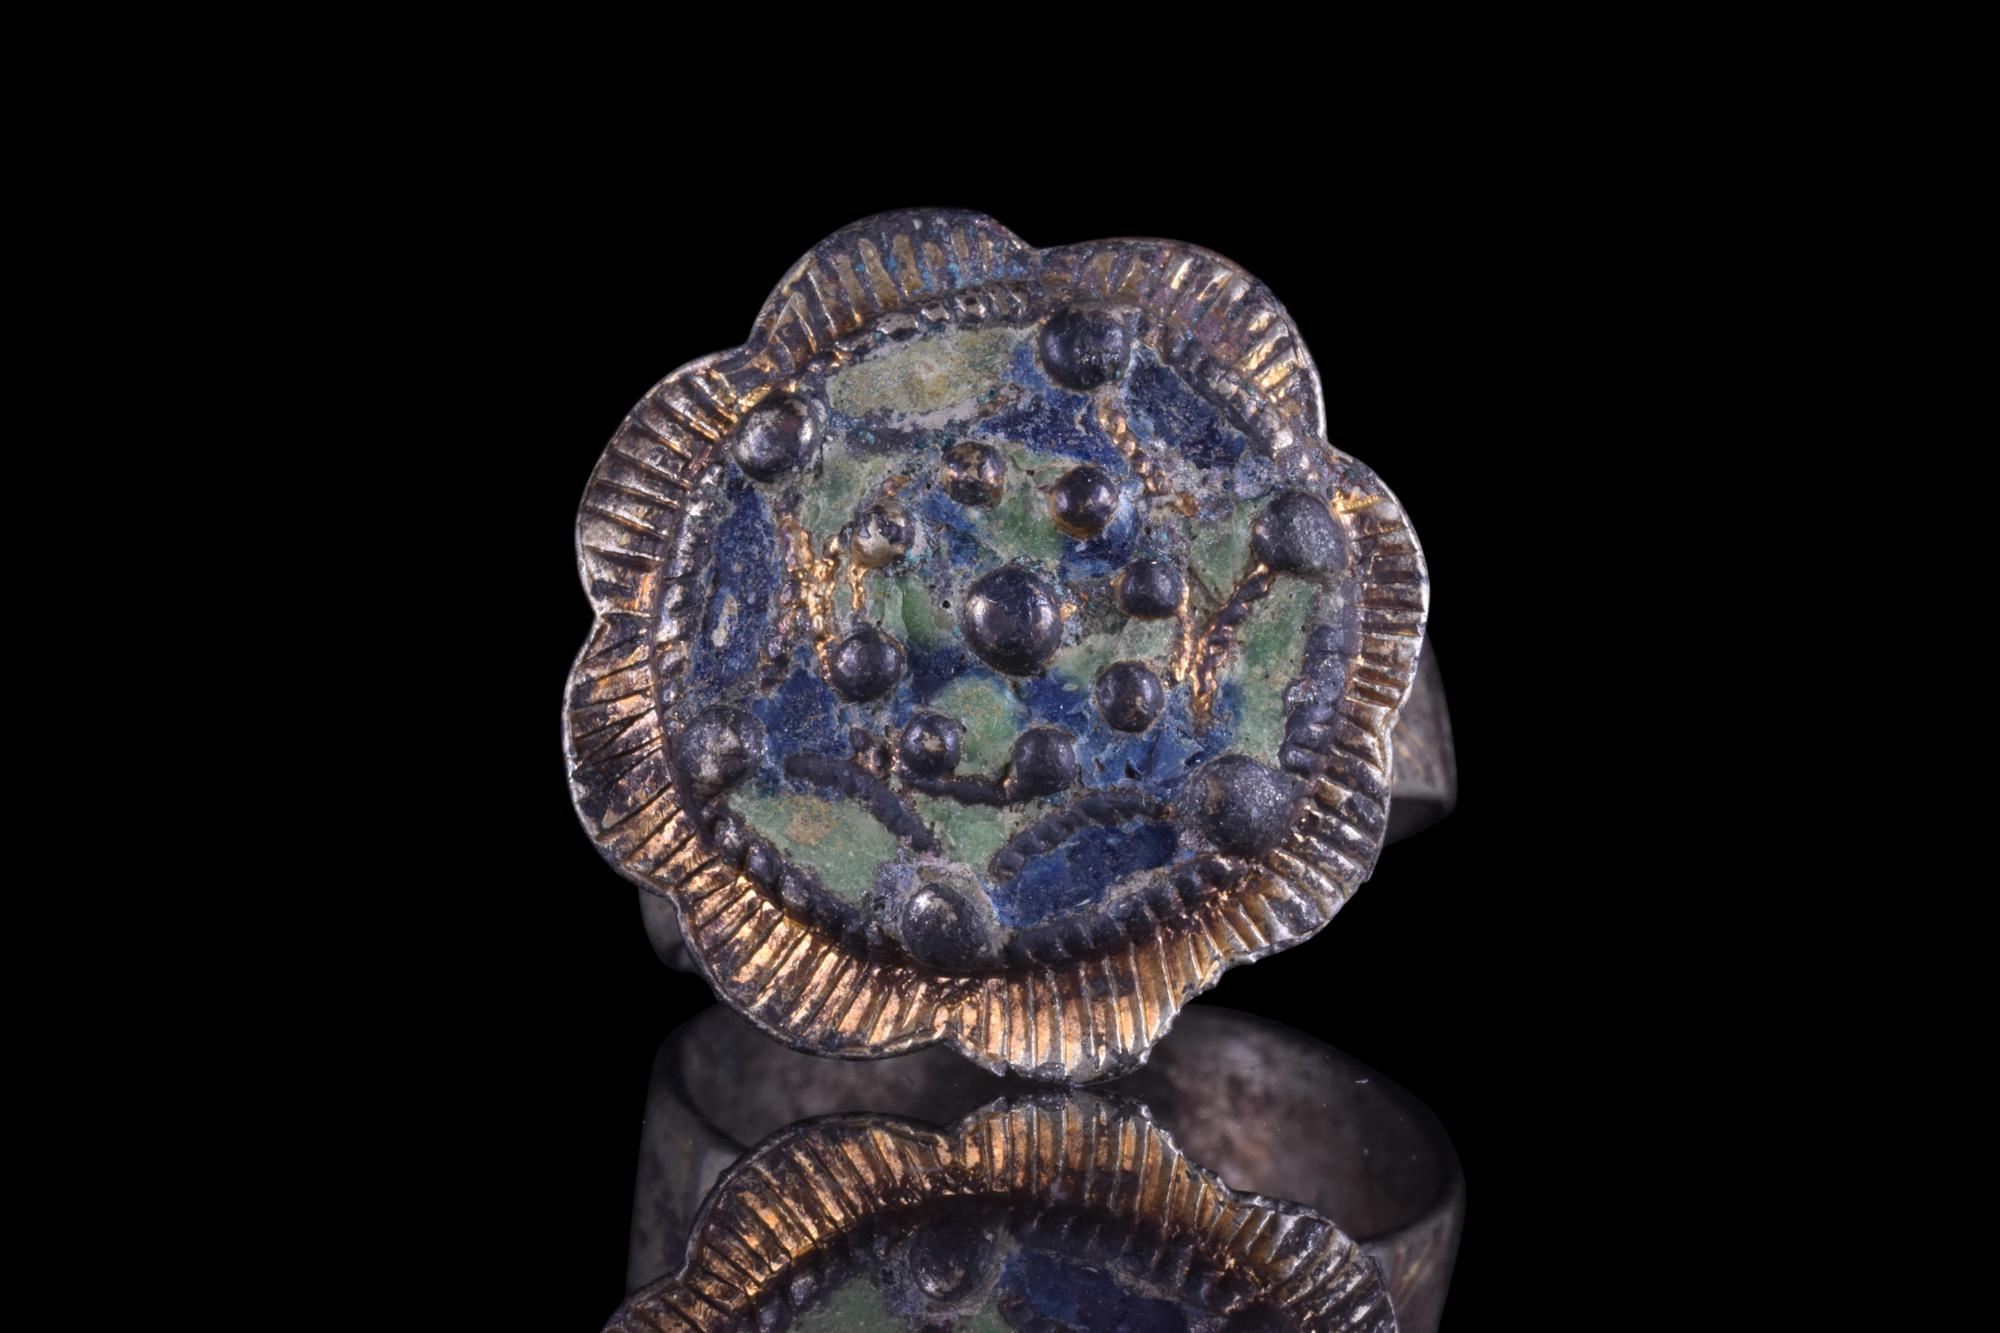 Ein exquisiter Fingerring aus vergoldetem Silber mit einer schönen blumenförmigen Lünette mit erhabenen Bossen und Resten von blauem und grünem Email. Der Ring ist darüber hinaus mit mehreren komplizierten Details verziert, darunter zarte Gravuren